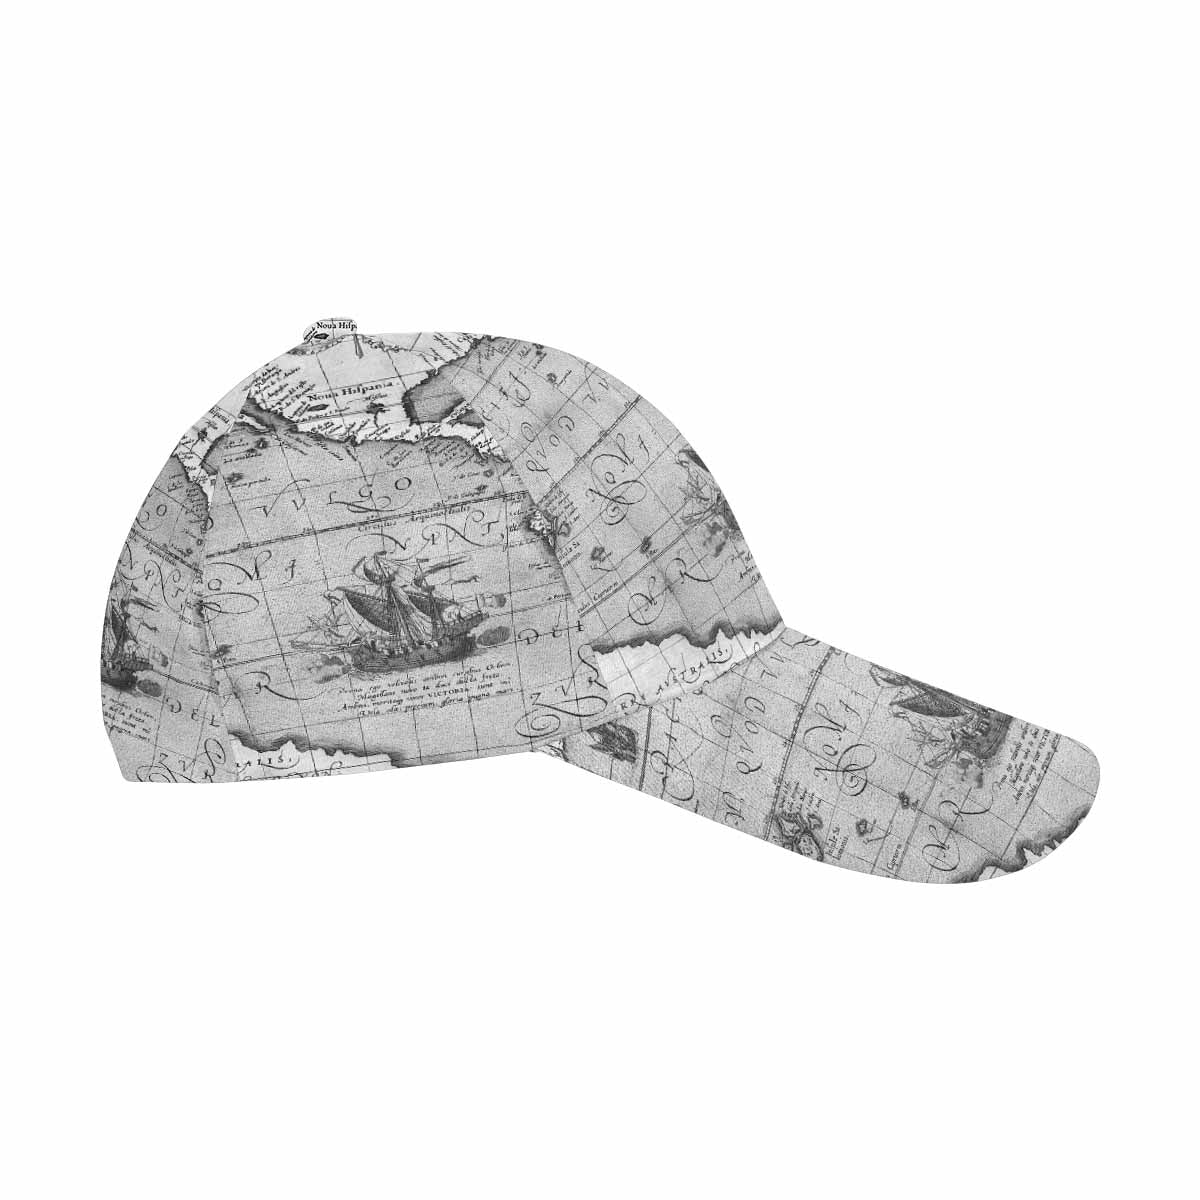 Antique Map design dad cap, trucker hat, Design 44